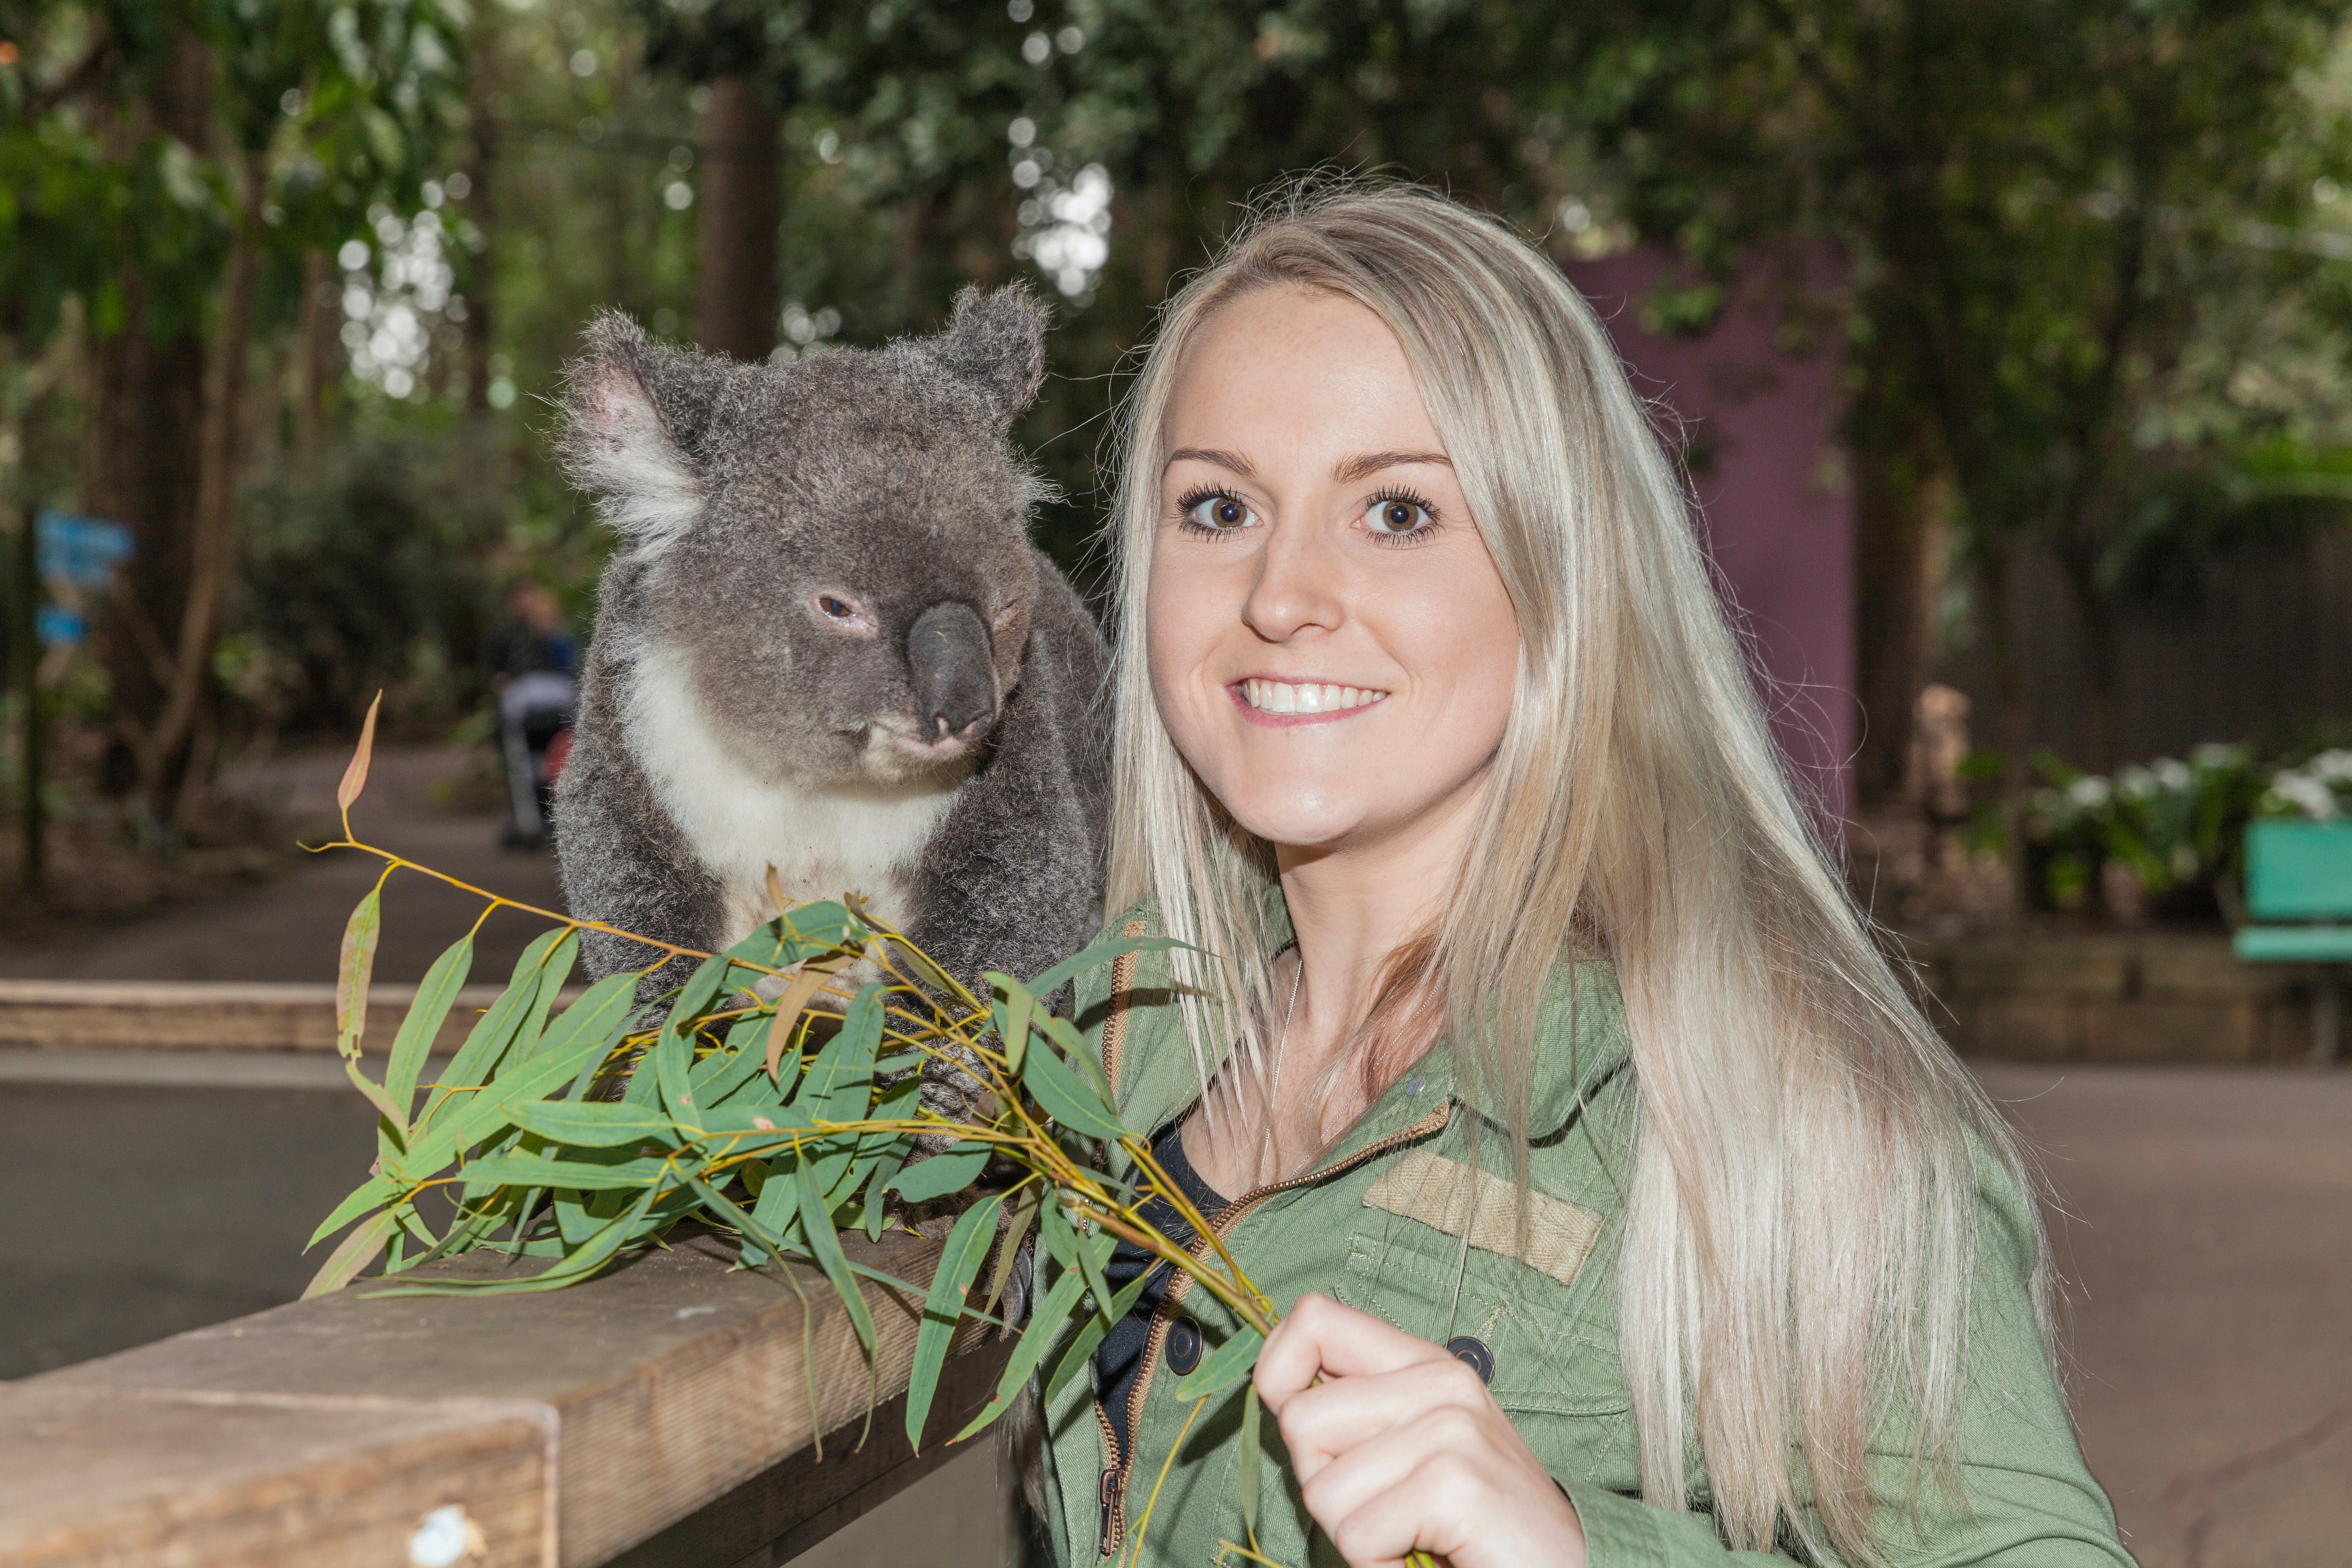 Koala Park Sanctuary - Redcliffe Tourism